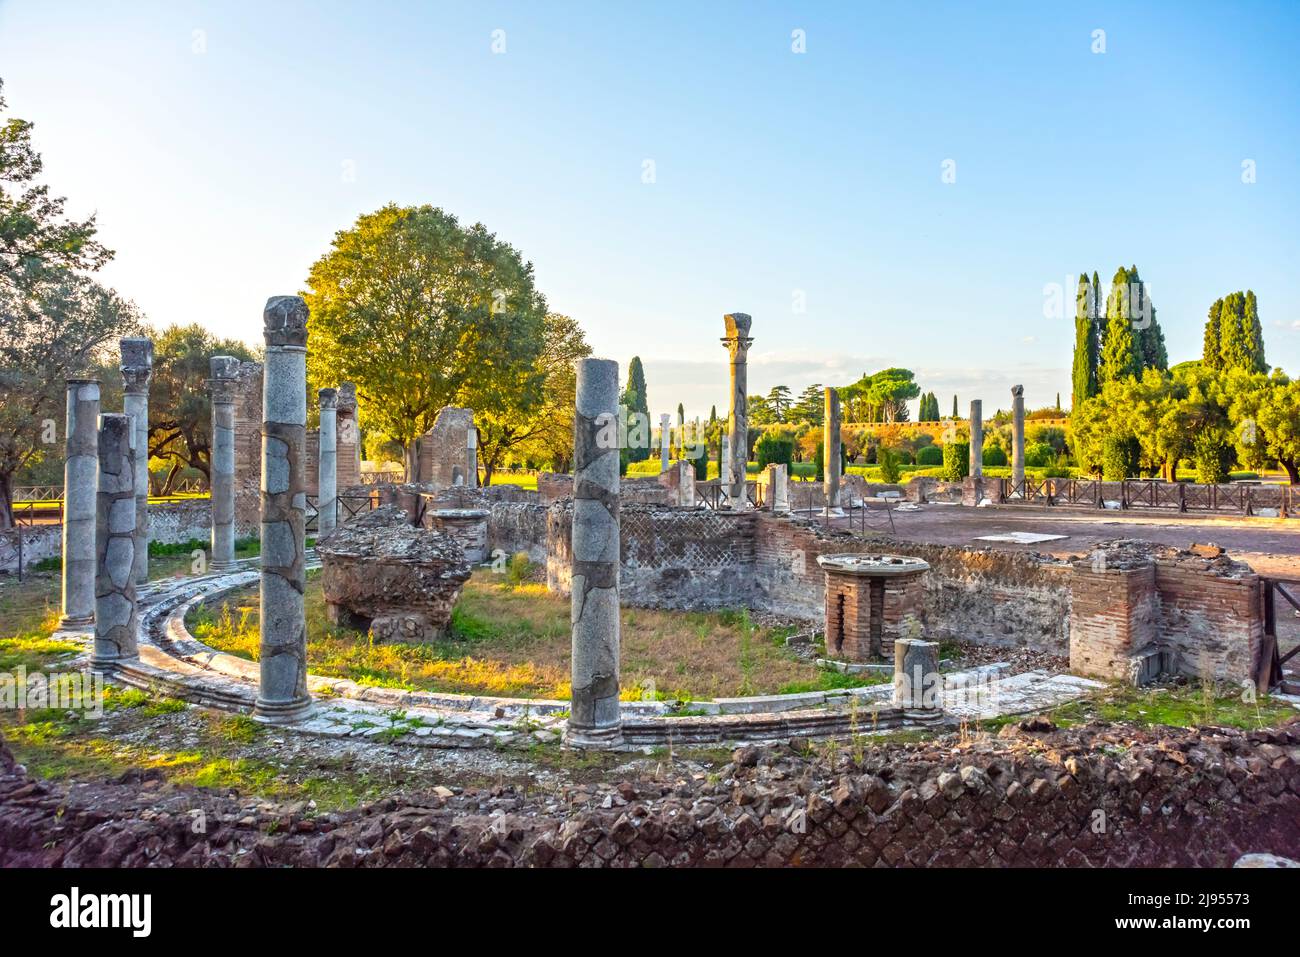 Villa Adriana Complejo arqueológico romano en Tivoli, Italia Foto de stock